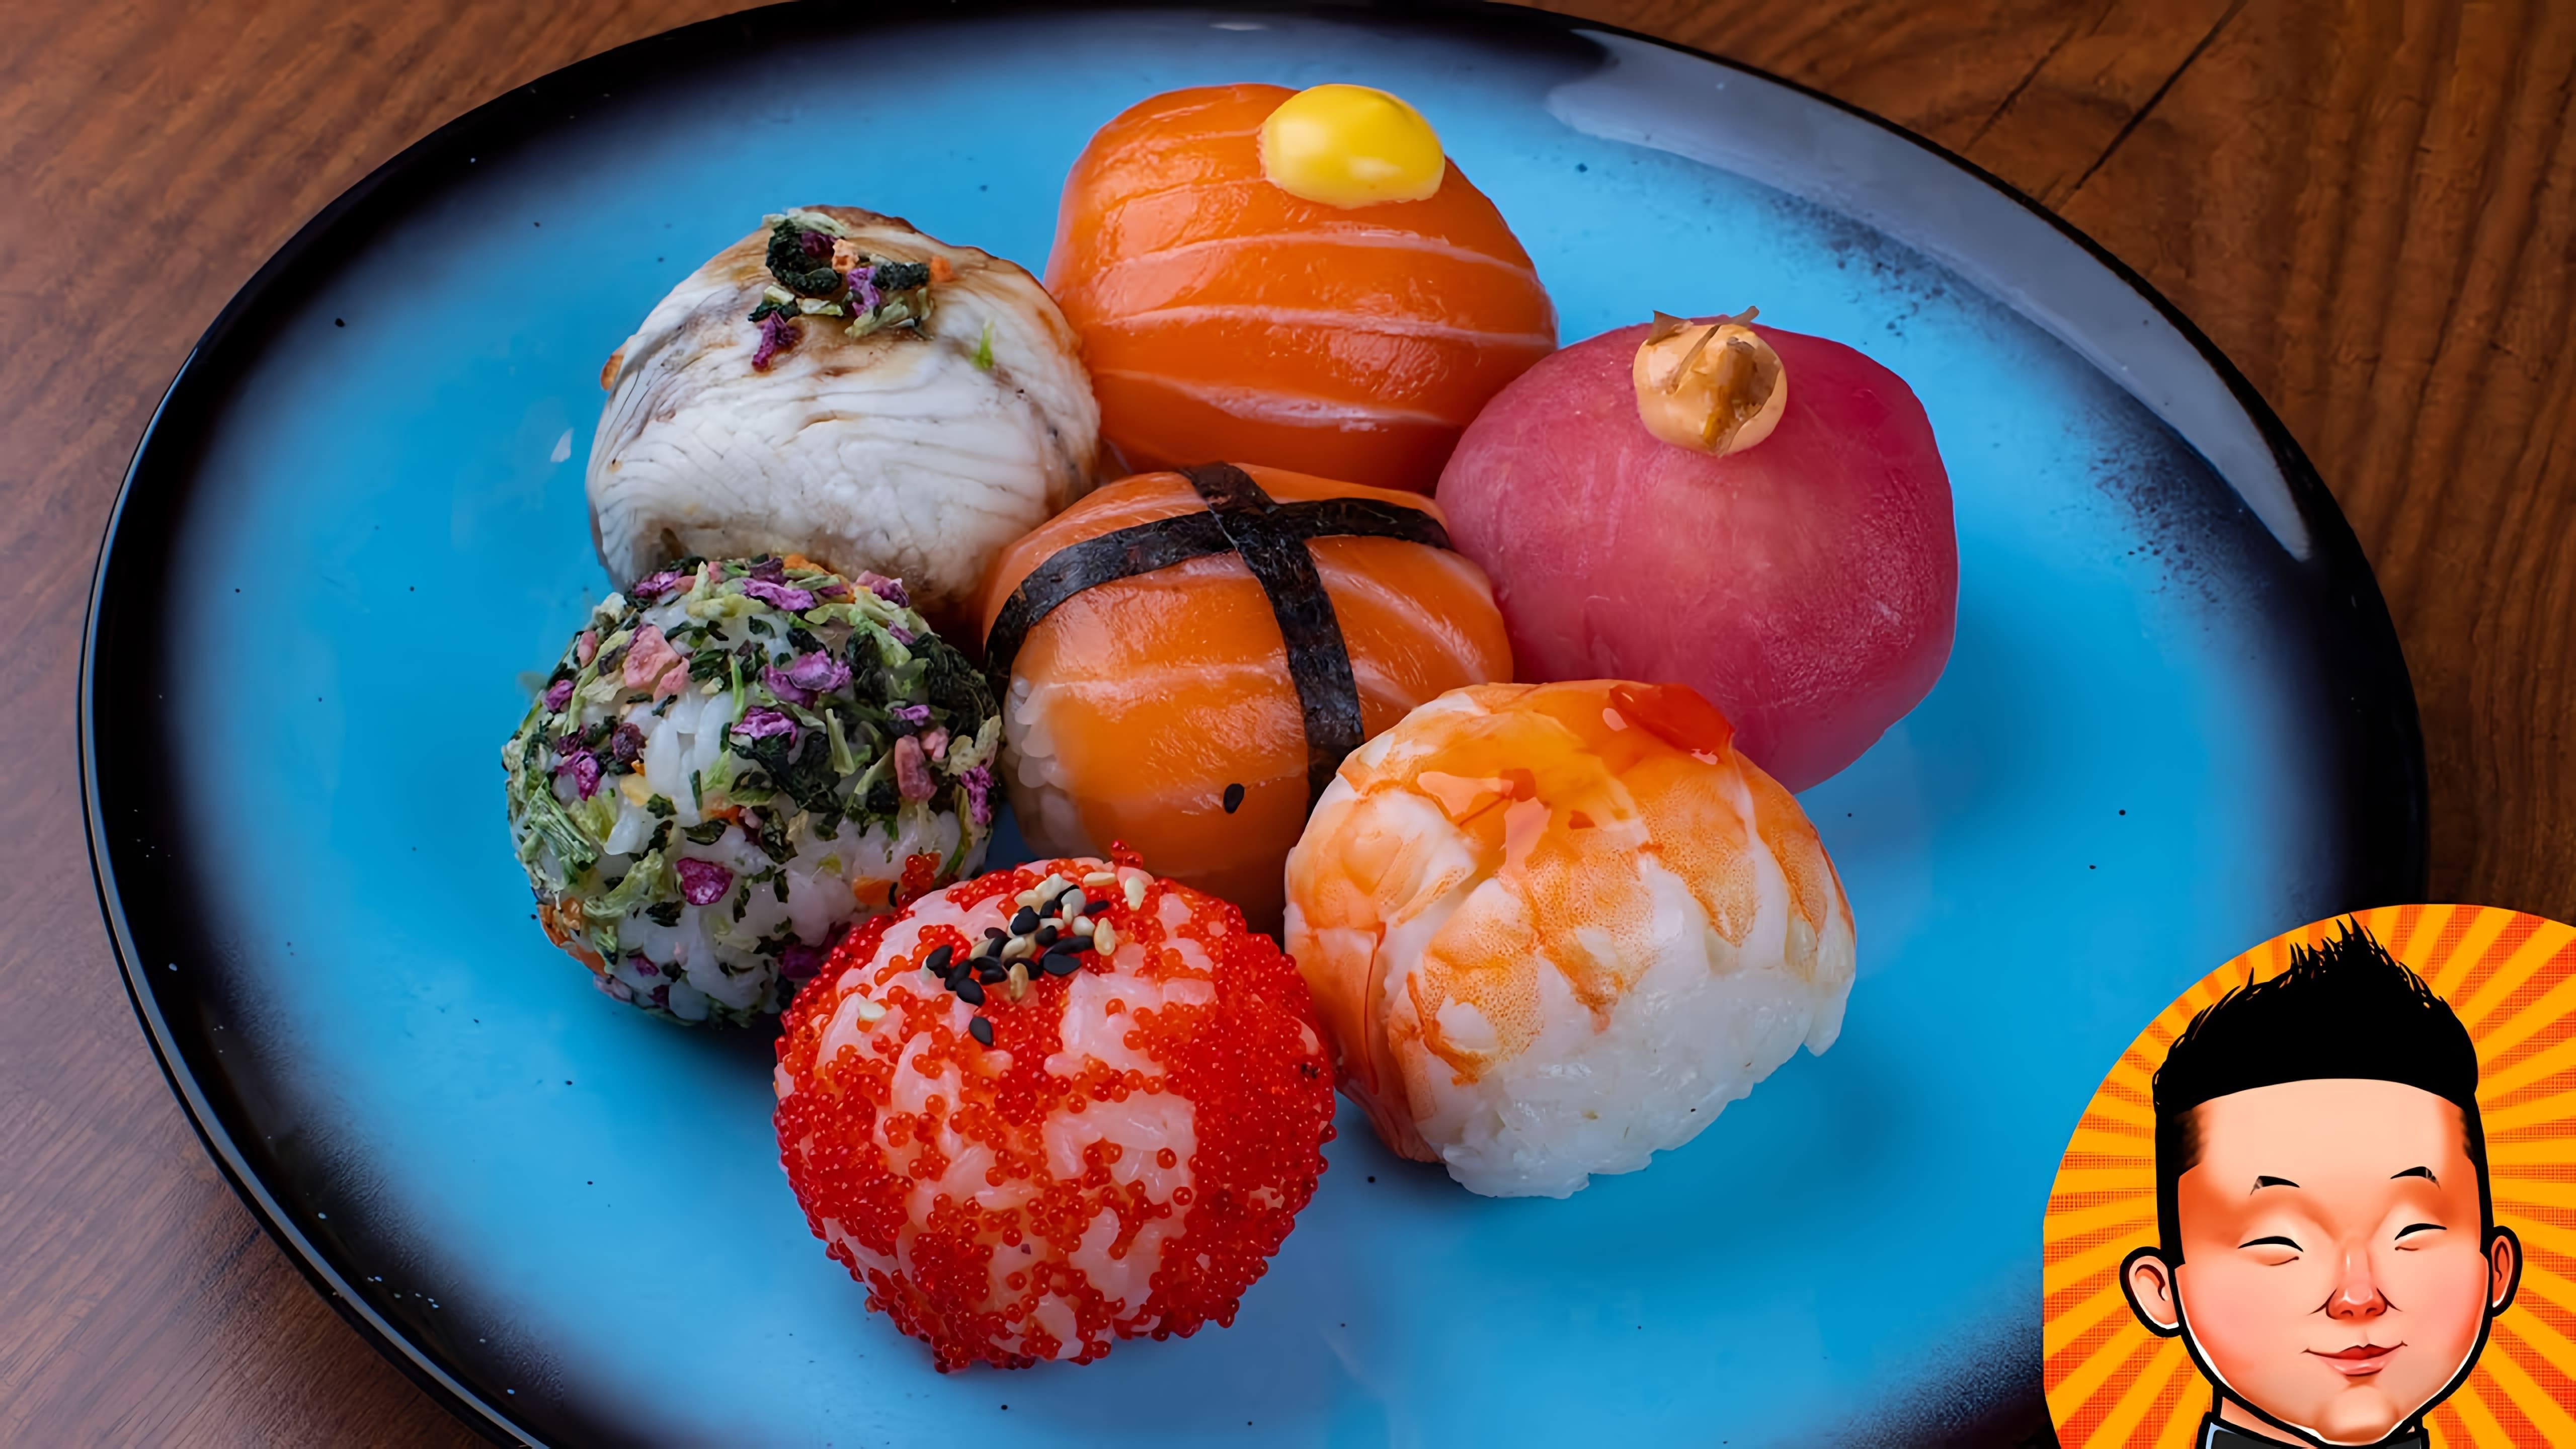 Рецепт Суши Темари - это видео-ролик, который демонстрирует процесс приготовления традиционного японского блюда - суши Темари